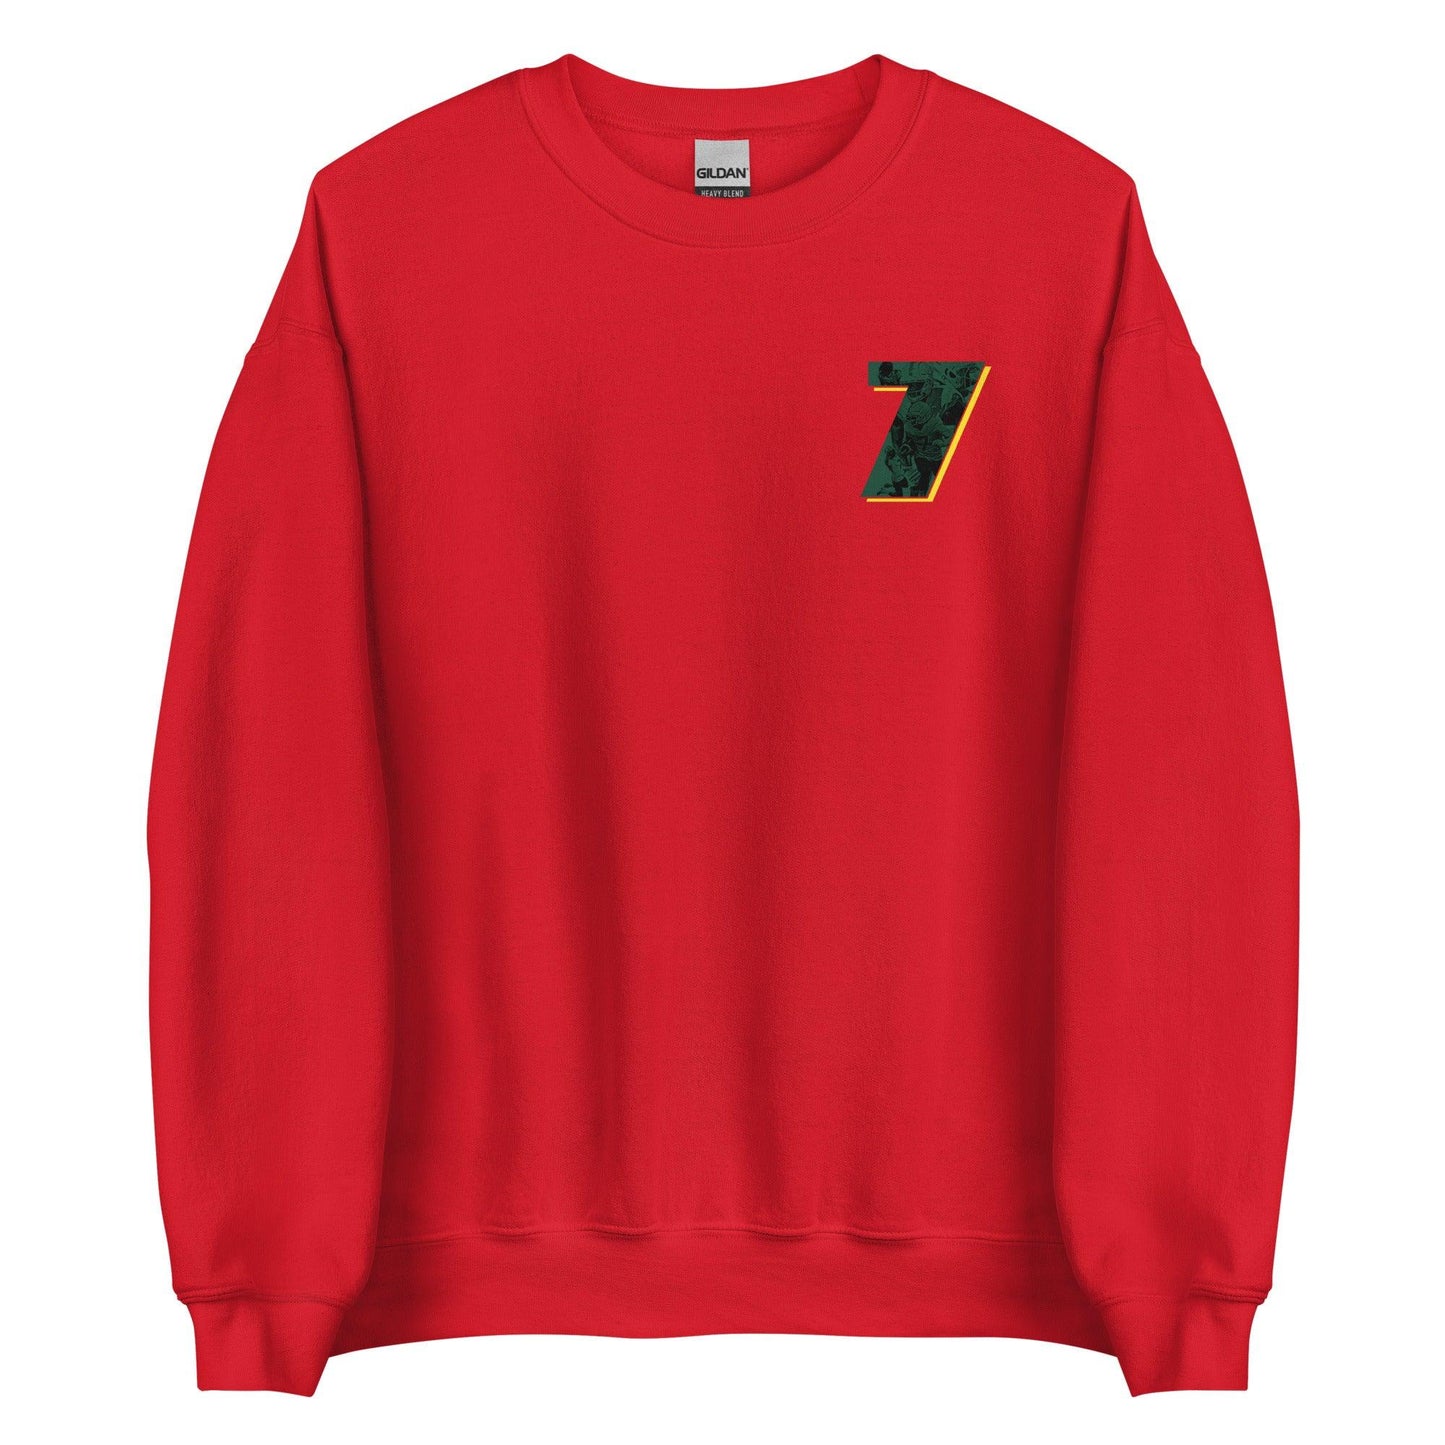 Seven McGee "7" Sweatshirt - Fan Arch